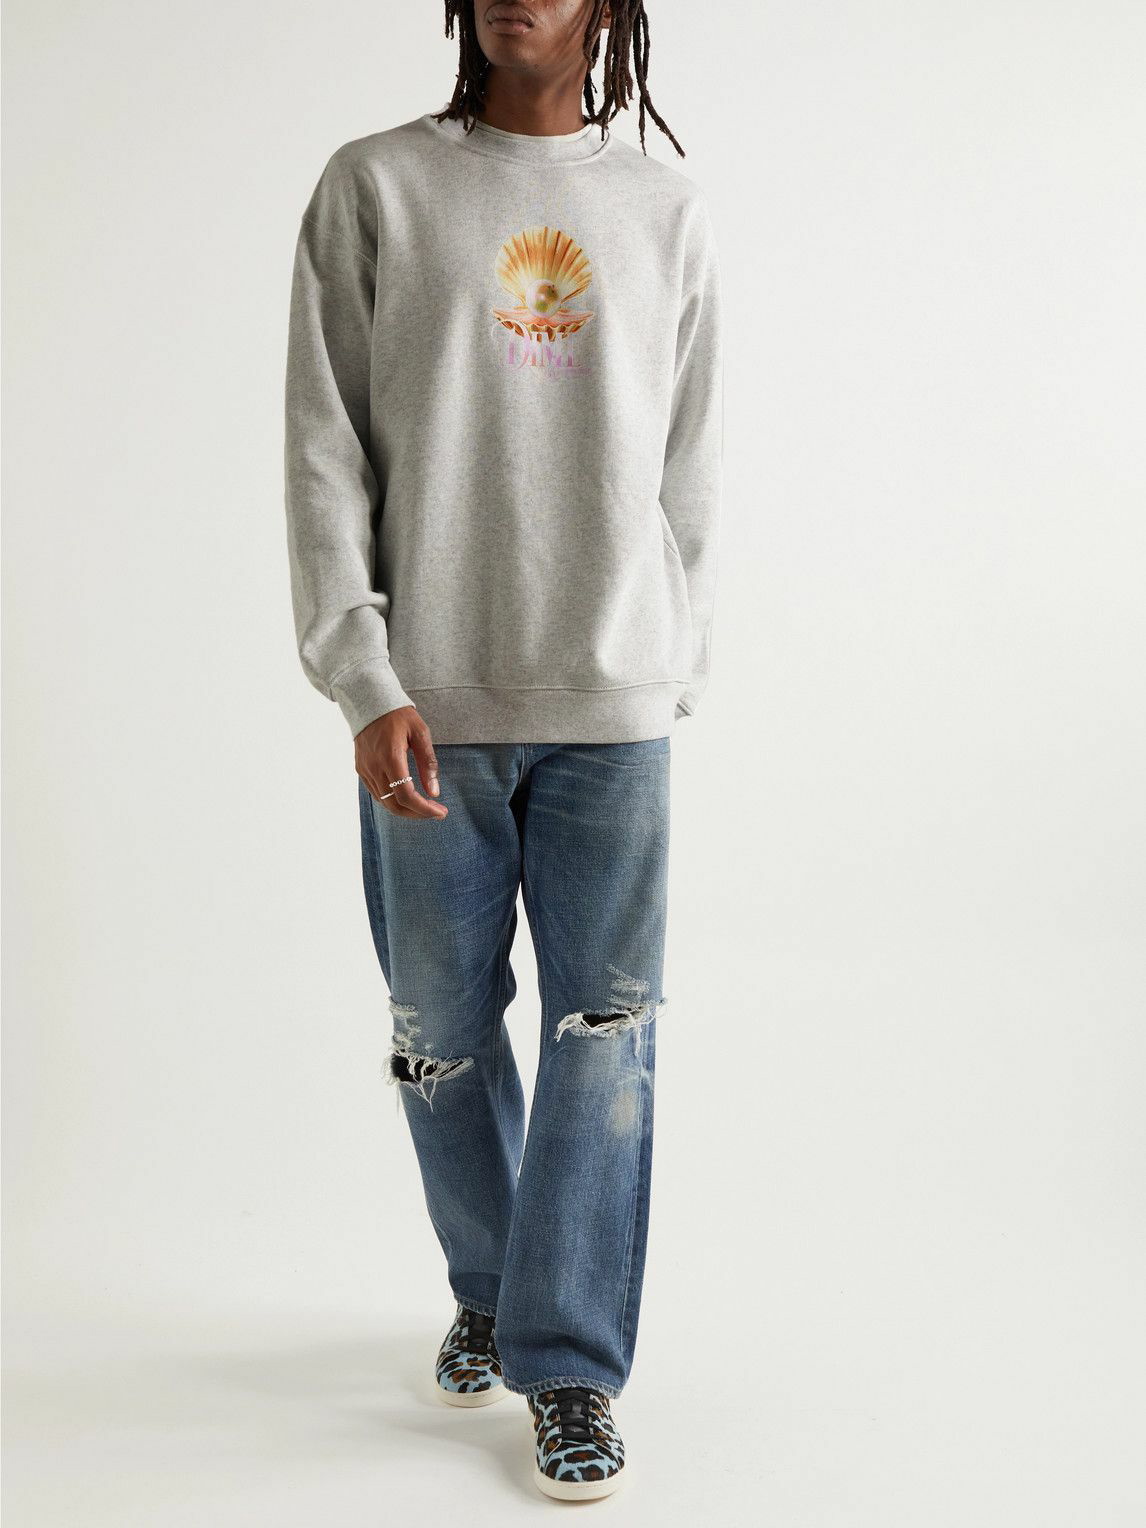 DIME - Unmentionables Logo-Print Cotton-Jersey Sweatshirt - Gray Dime